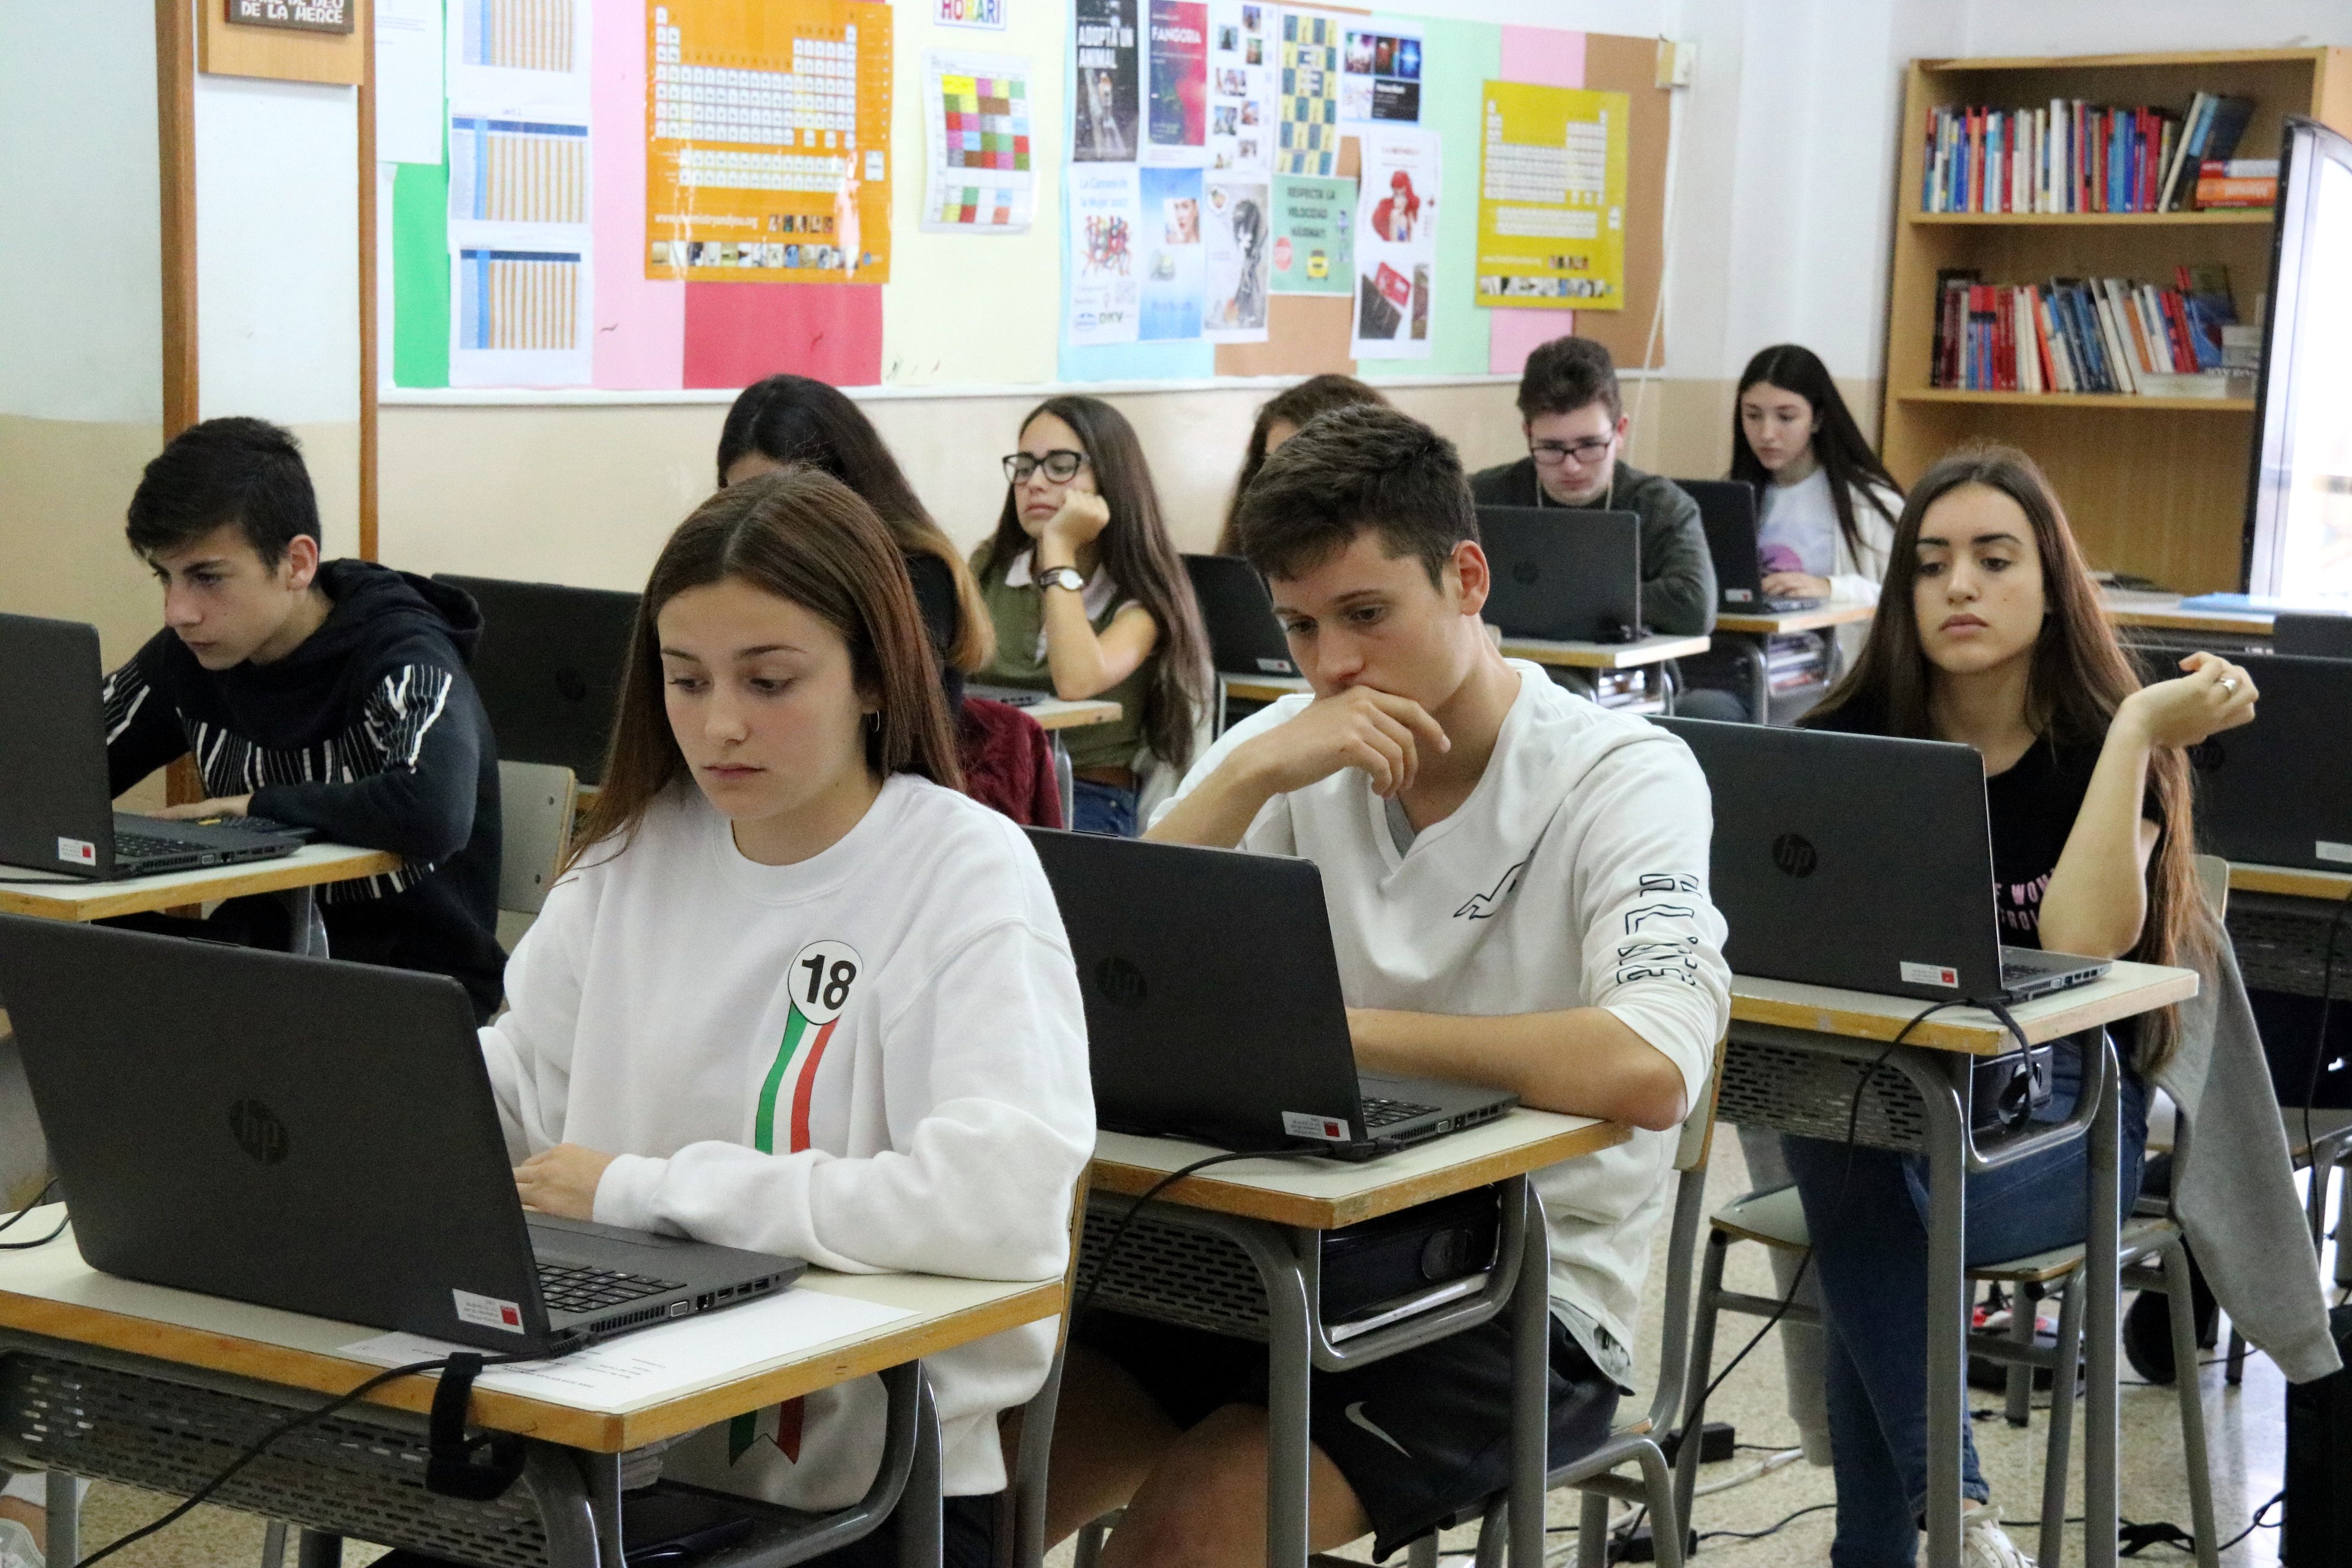 Catalunya obtiene su peor resultado en ciencias en las pruebas PISA